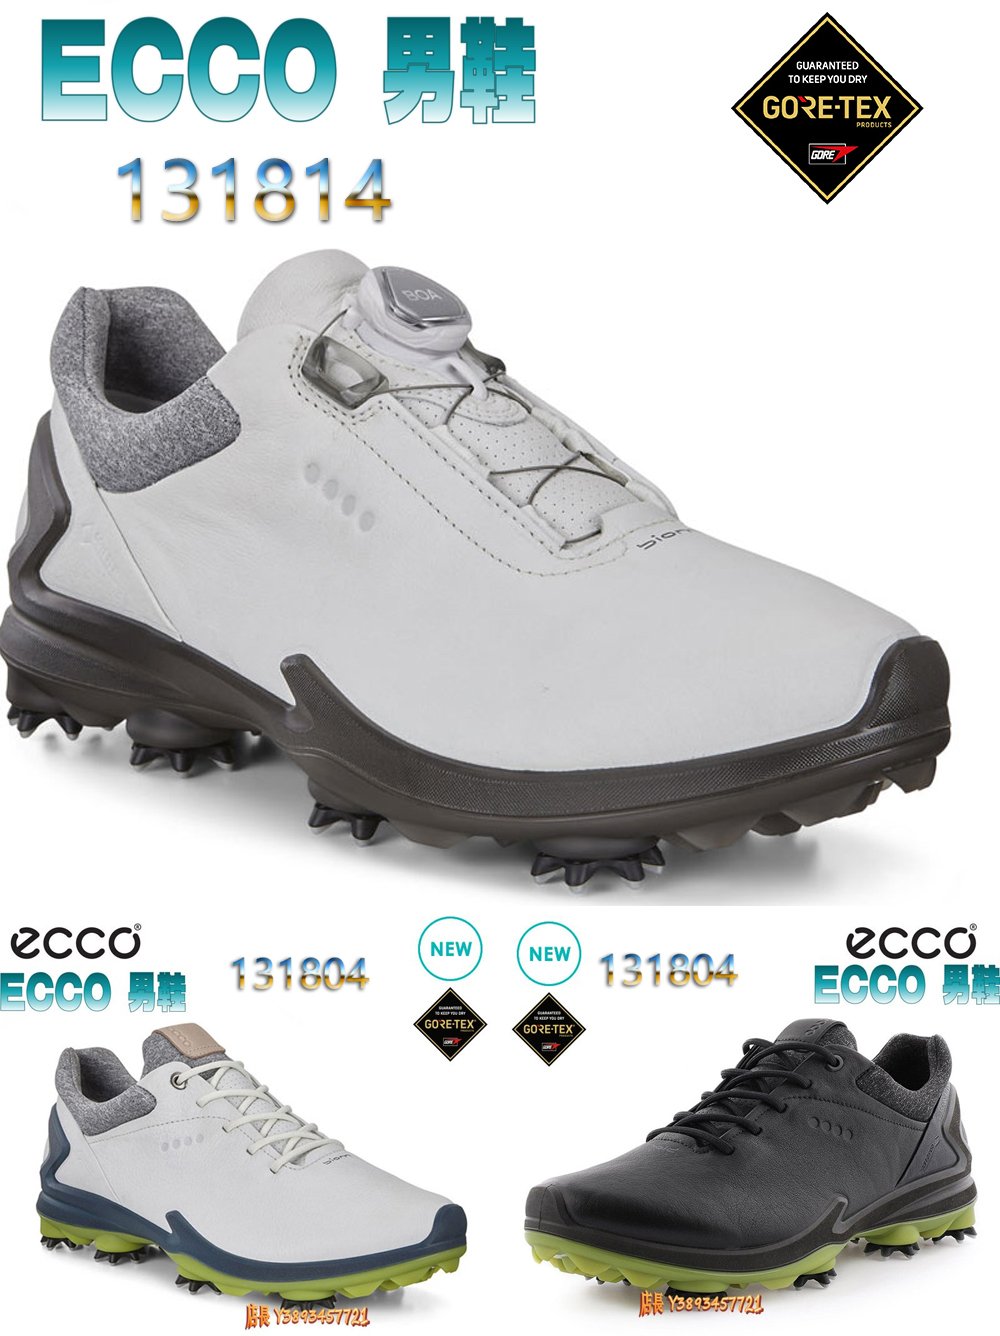 正貨ECCO GOLF BIOM G3 專業高爾夫球鞋 固定釘 男高爾夫訓練鞋 犛牛皮革 防水技術 科學緩衝131804